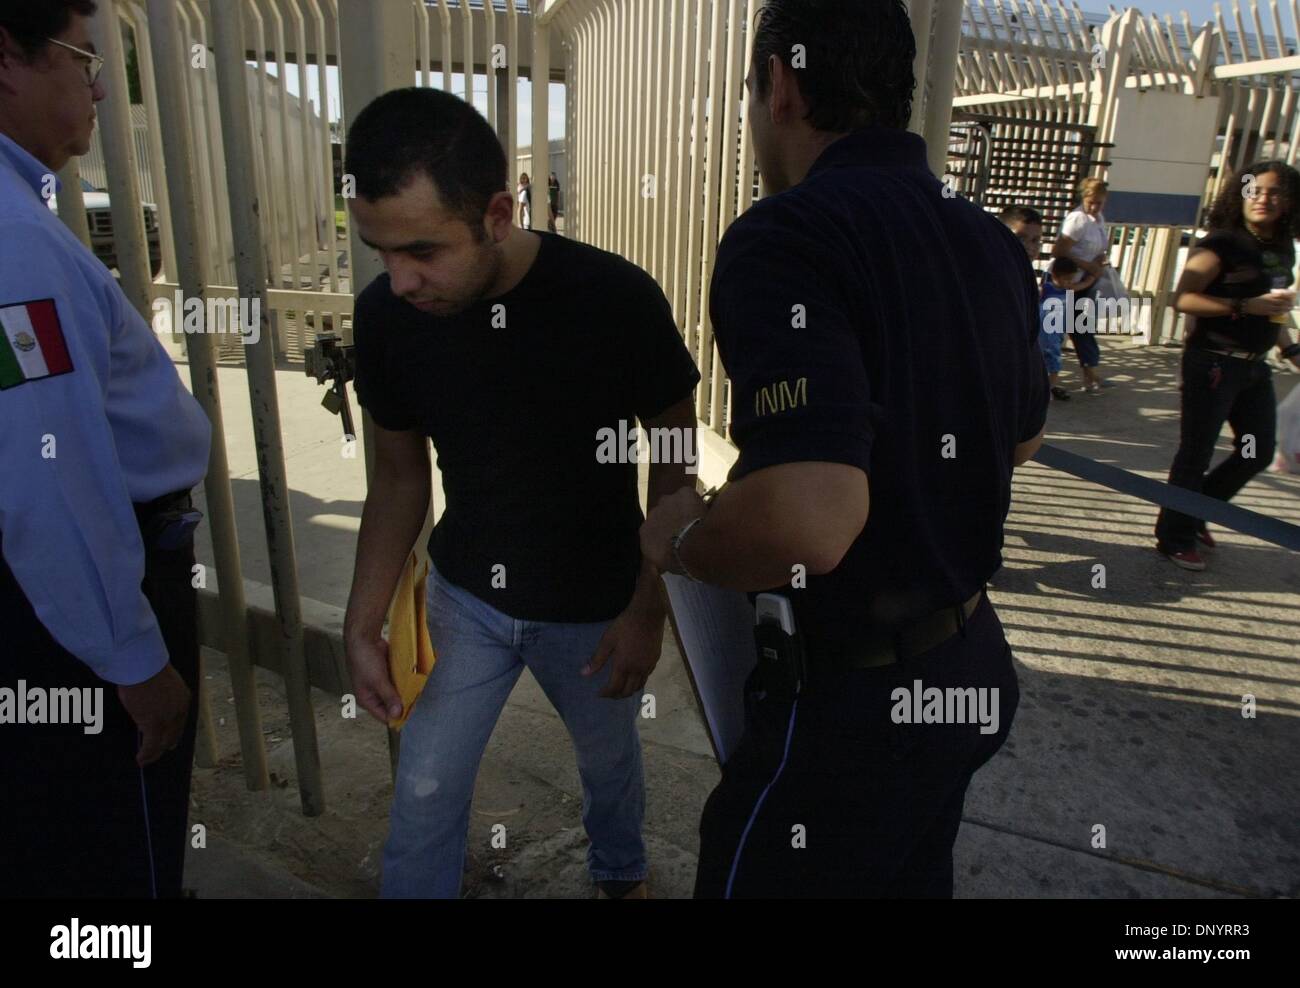 (Publié le 9/12/2004, A-1 ; UT1831473) ressortissants mexicains ayant un casier judiciaire aux États-Unis sont expulsés jeudi après-midi à travers les barreaux qui opèrent la séparation Border Patrol et Grupo Beta, une agence de protection des migrants à Tijuana. Cet échange se passe plusieurs fois par jour à l'entrée du Port de San Ysidro, juste à côté de la zone où les piétons s'écoule à travers le t Banque D'Images